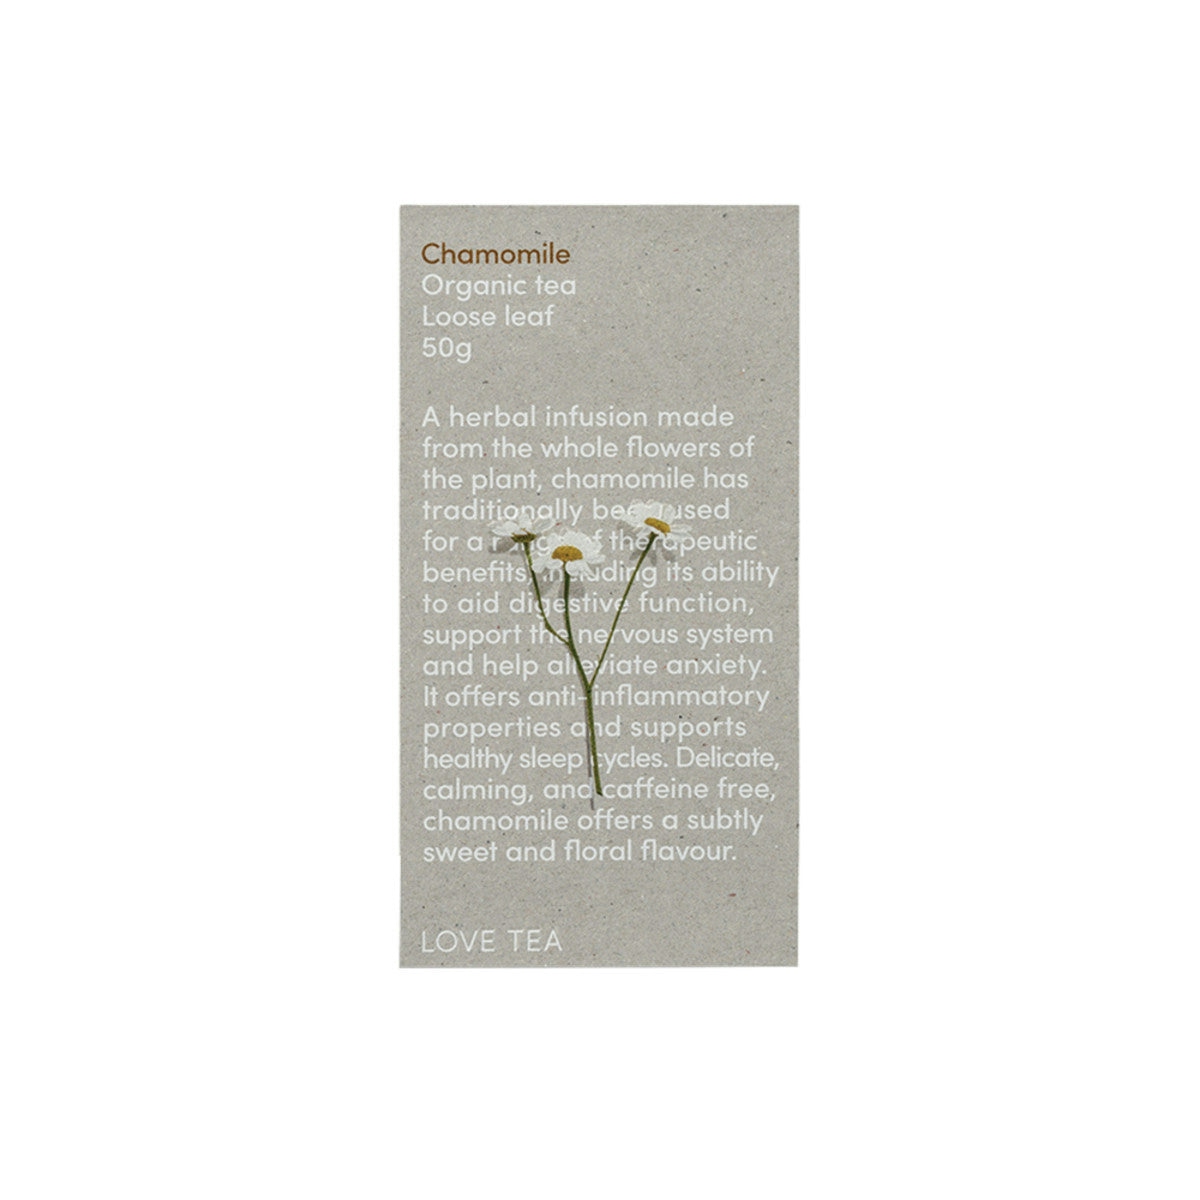 image of Love Tea Organic Chamomile Tea Loose Leaf 50g on white background 